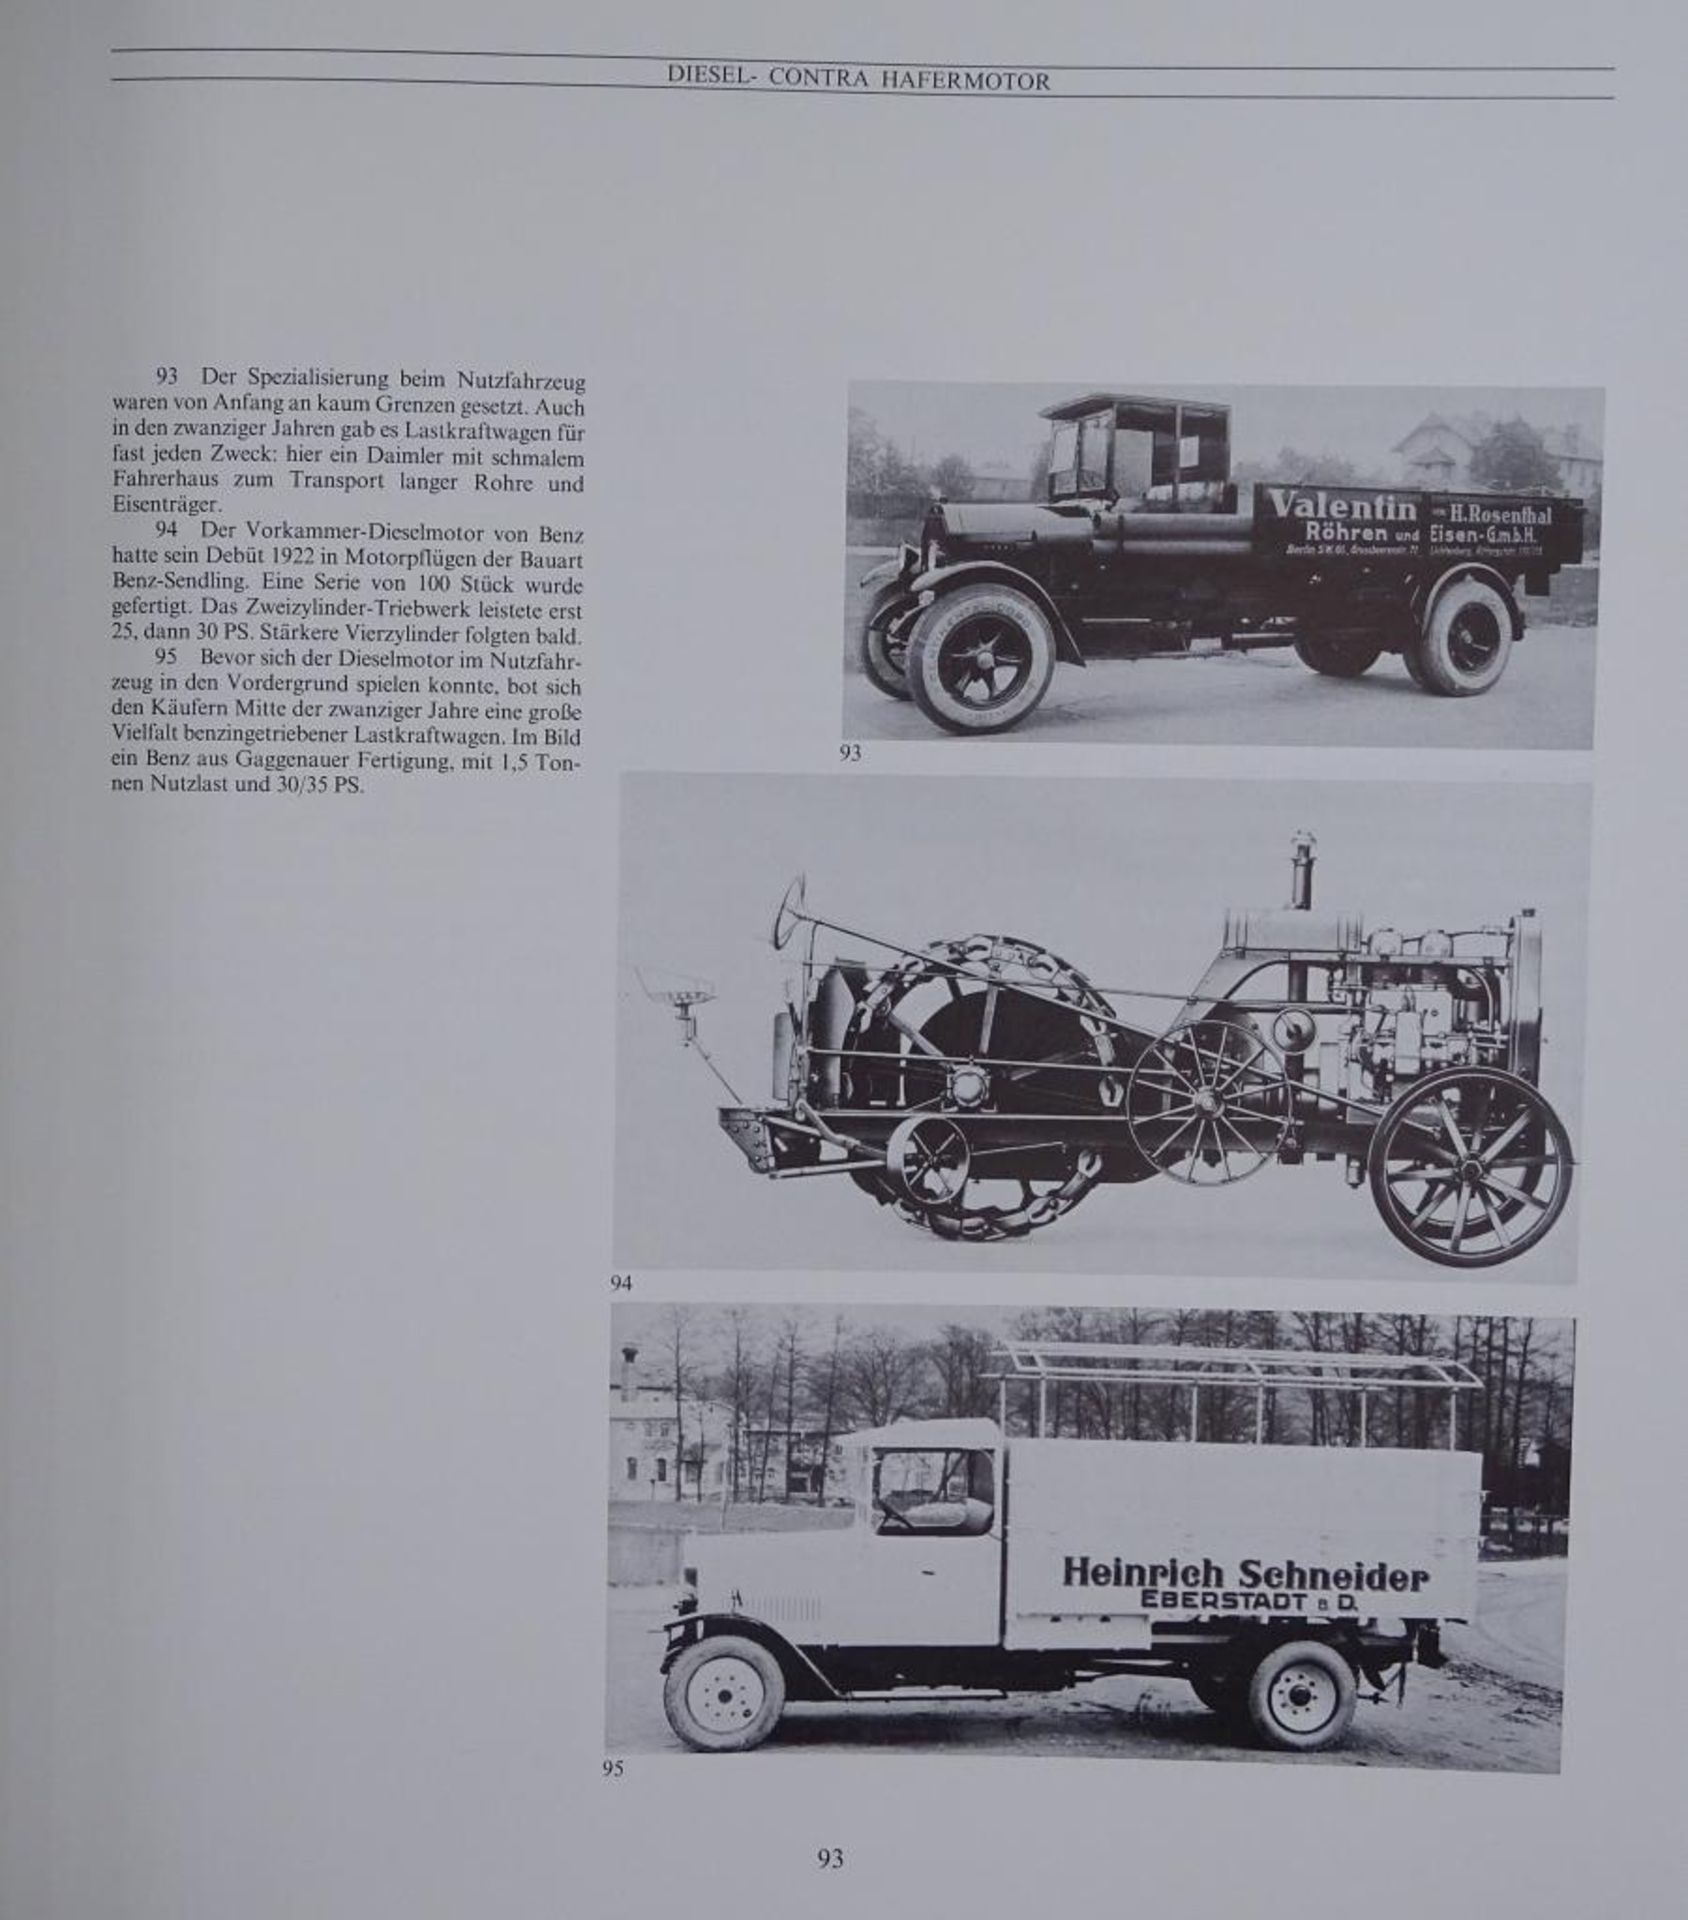 100 Jahre Daimler-Bezn, Zwei Bände, "Die Technik und das Unternehmen", 1986,im Schube - Bild 7 aus 10